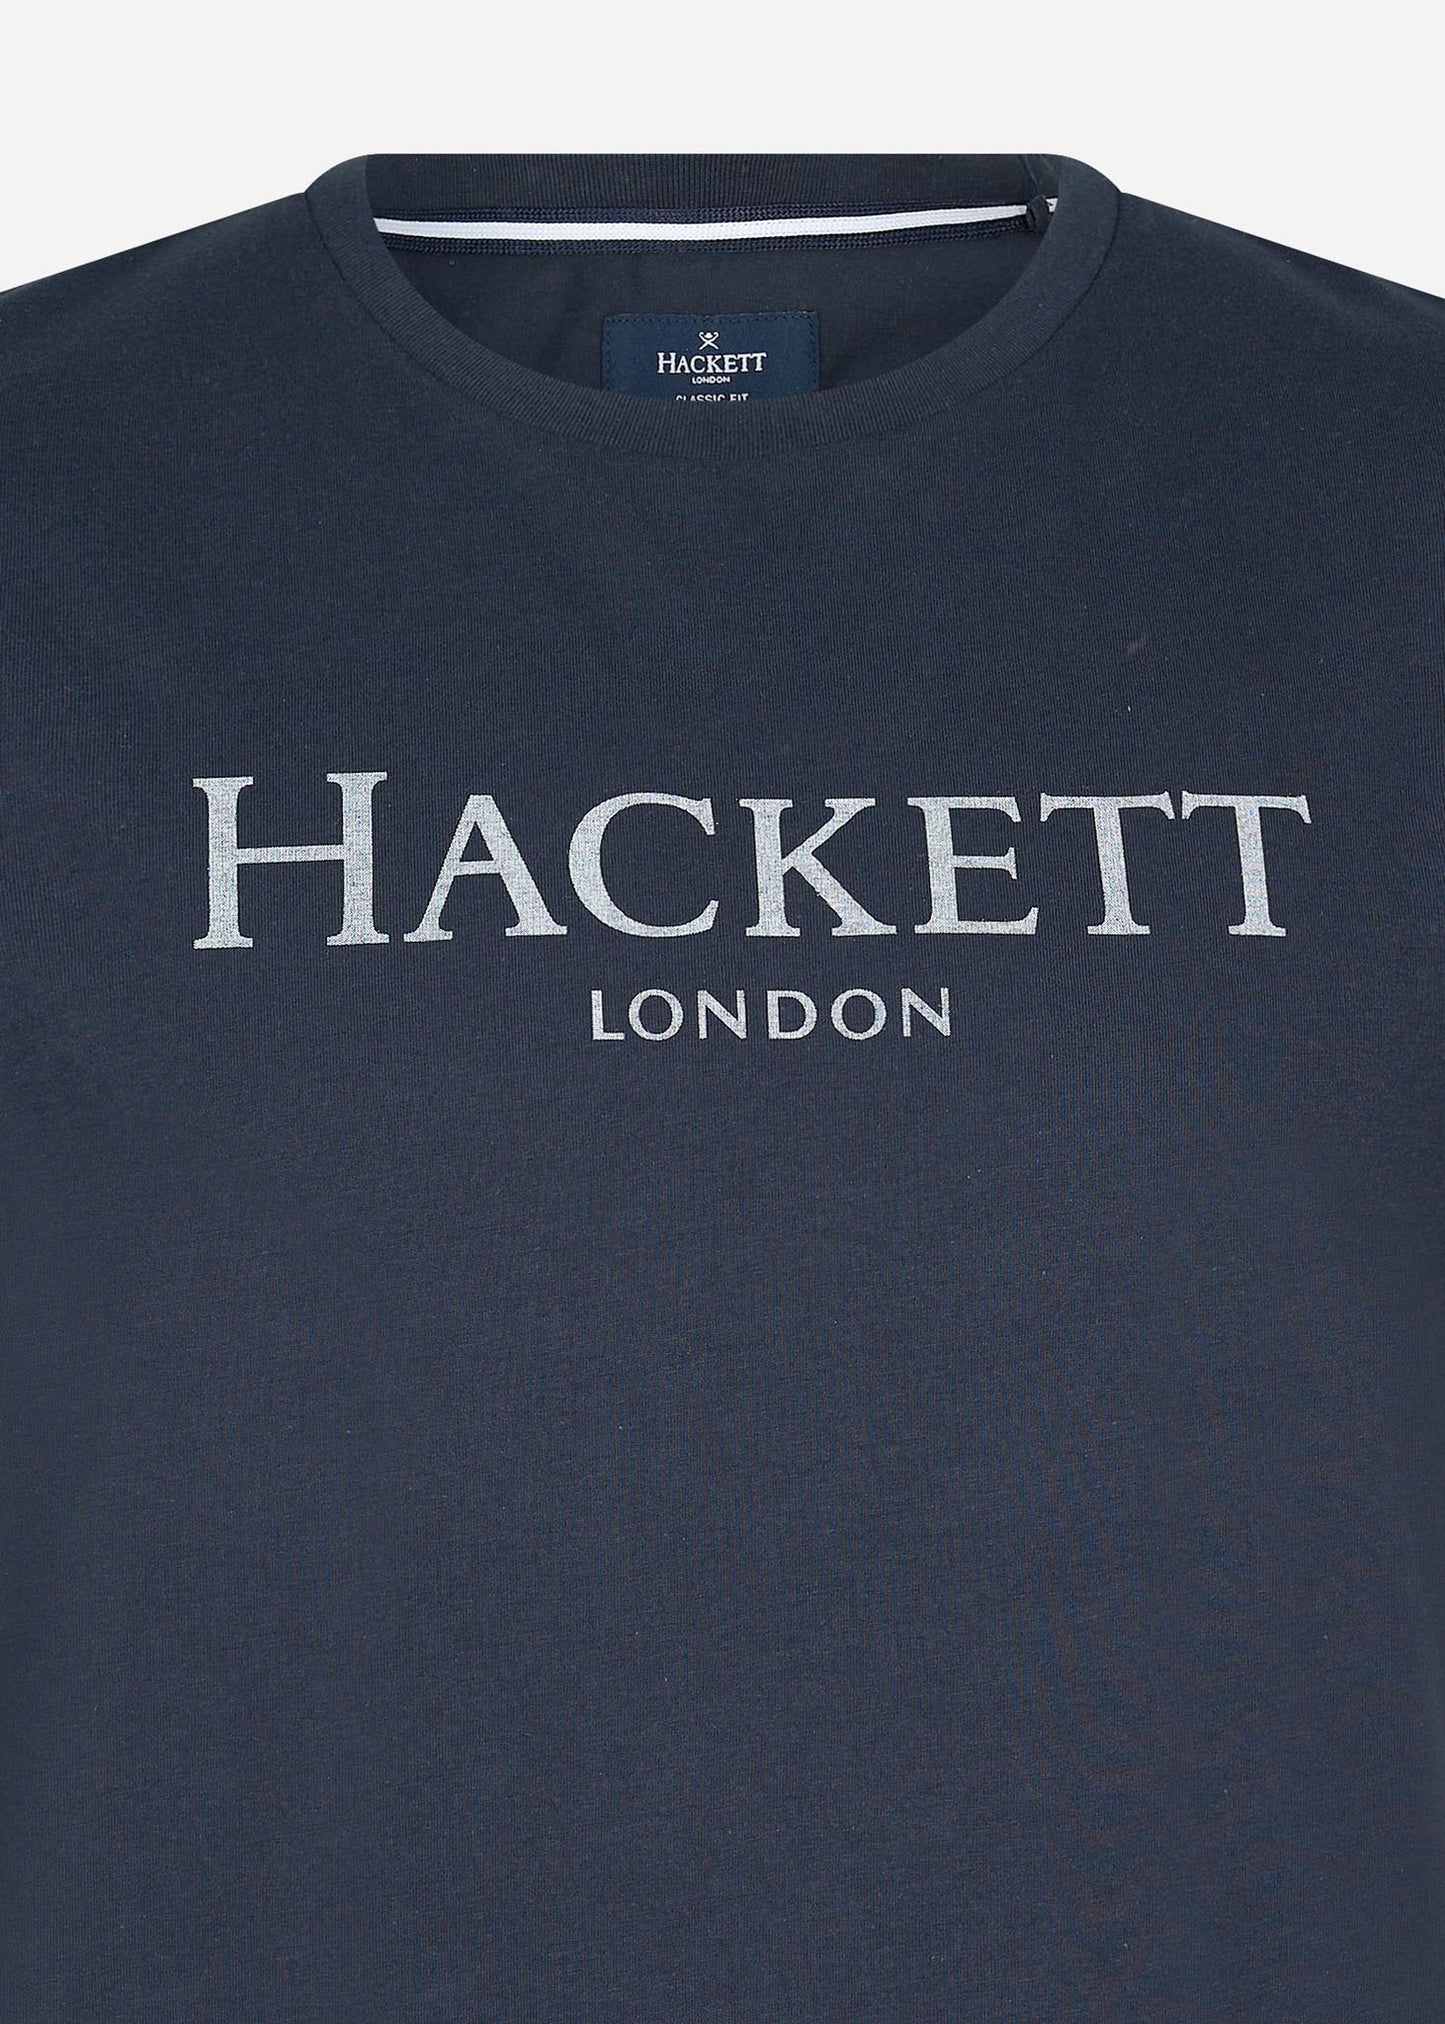 hackett london t-shirt navy 